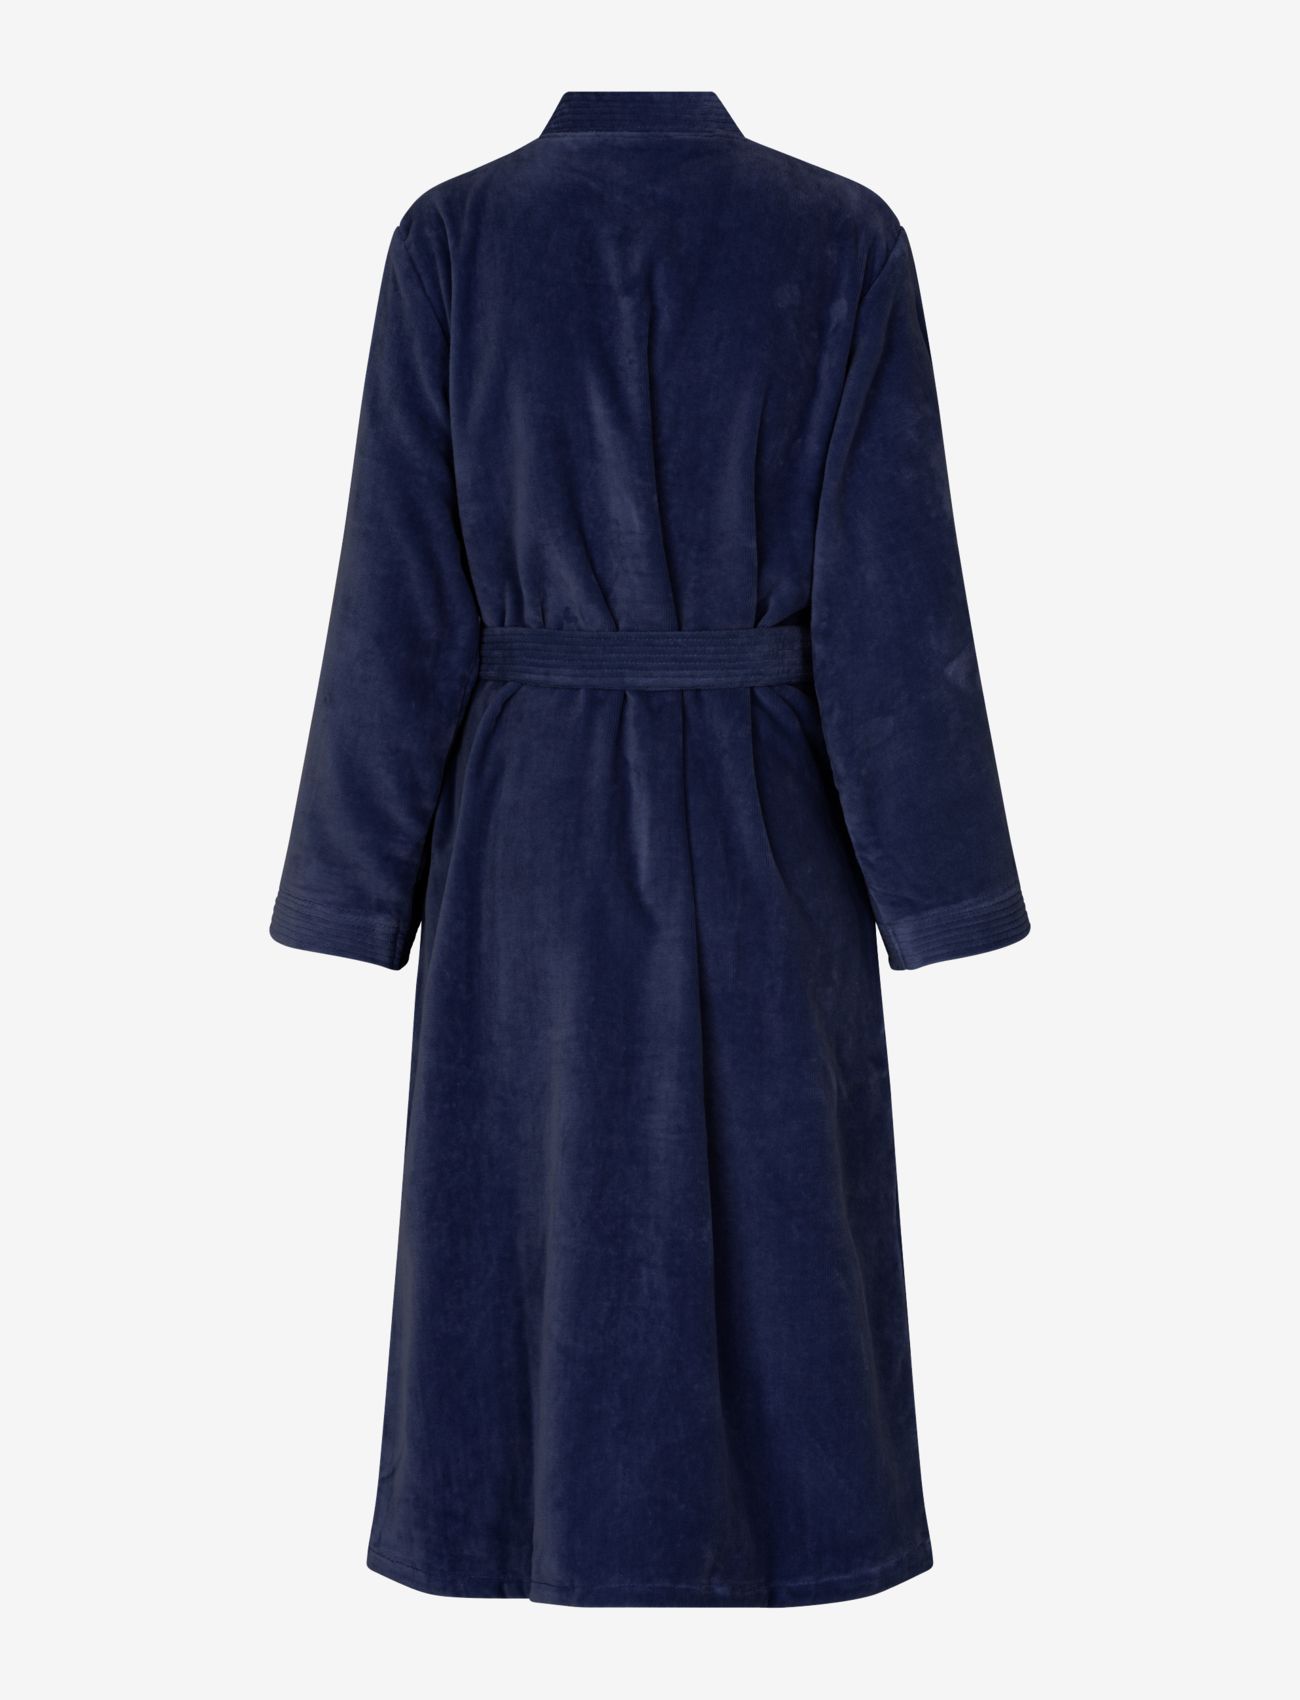 Rosemunde - Organic robe - birthday gifts - navy - 1